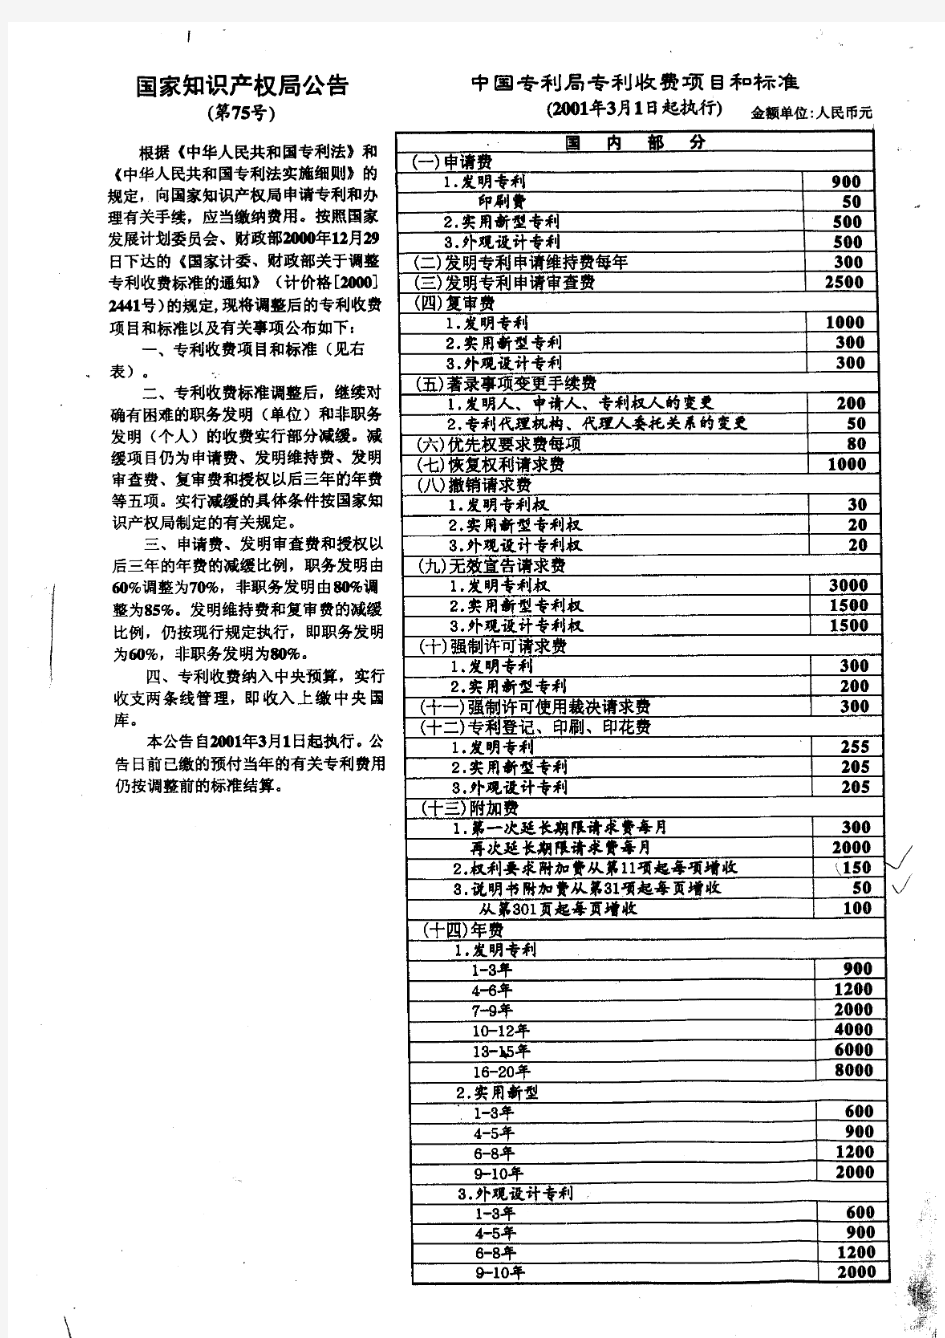 75号公告——中国专利局专利收费项目和标准